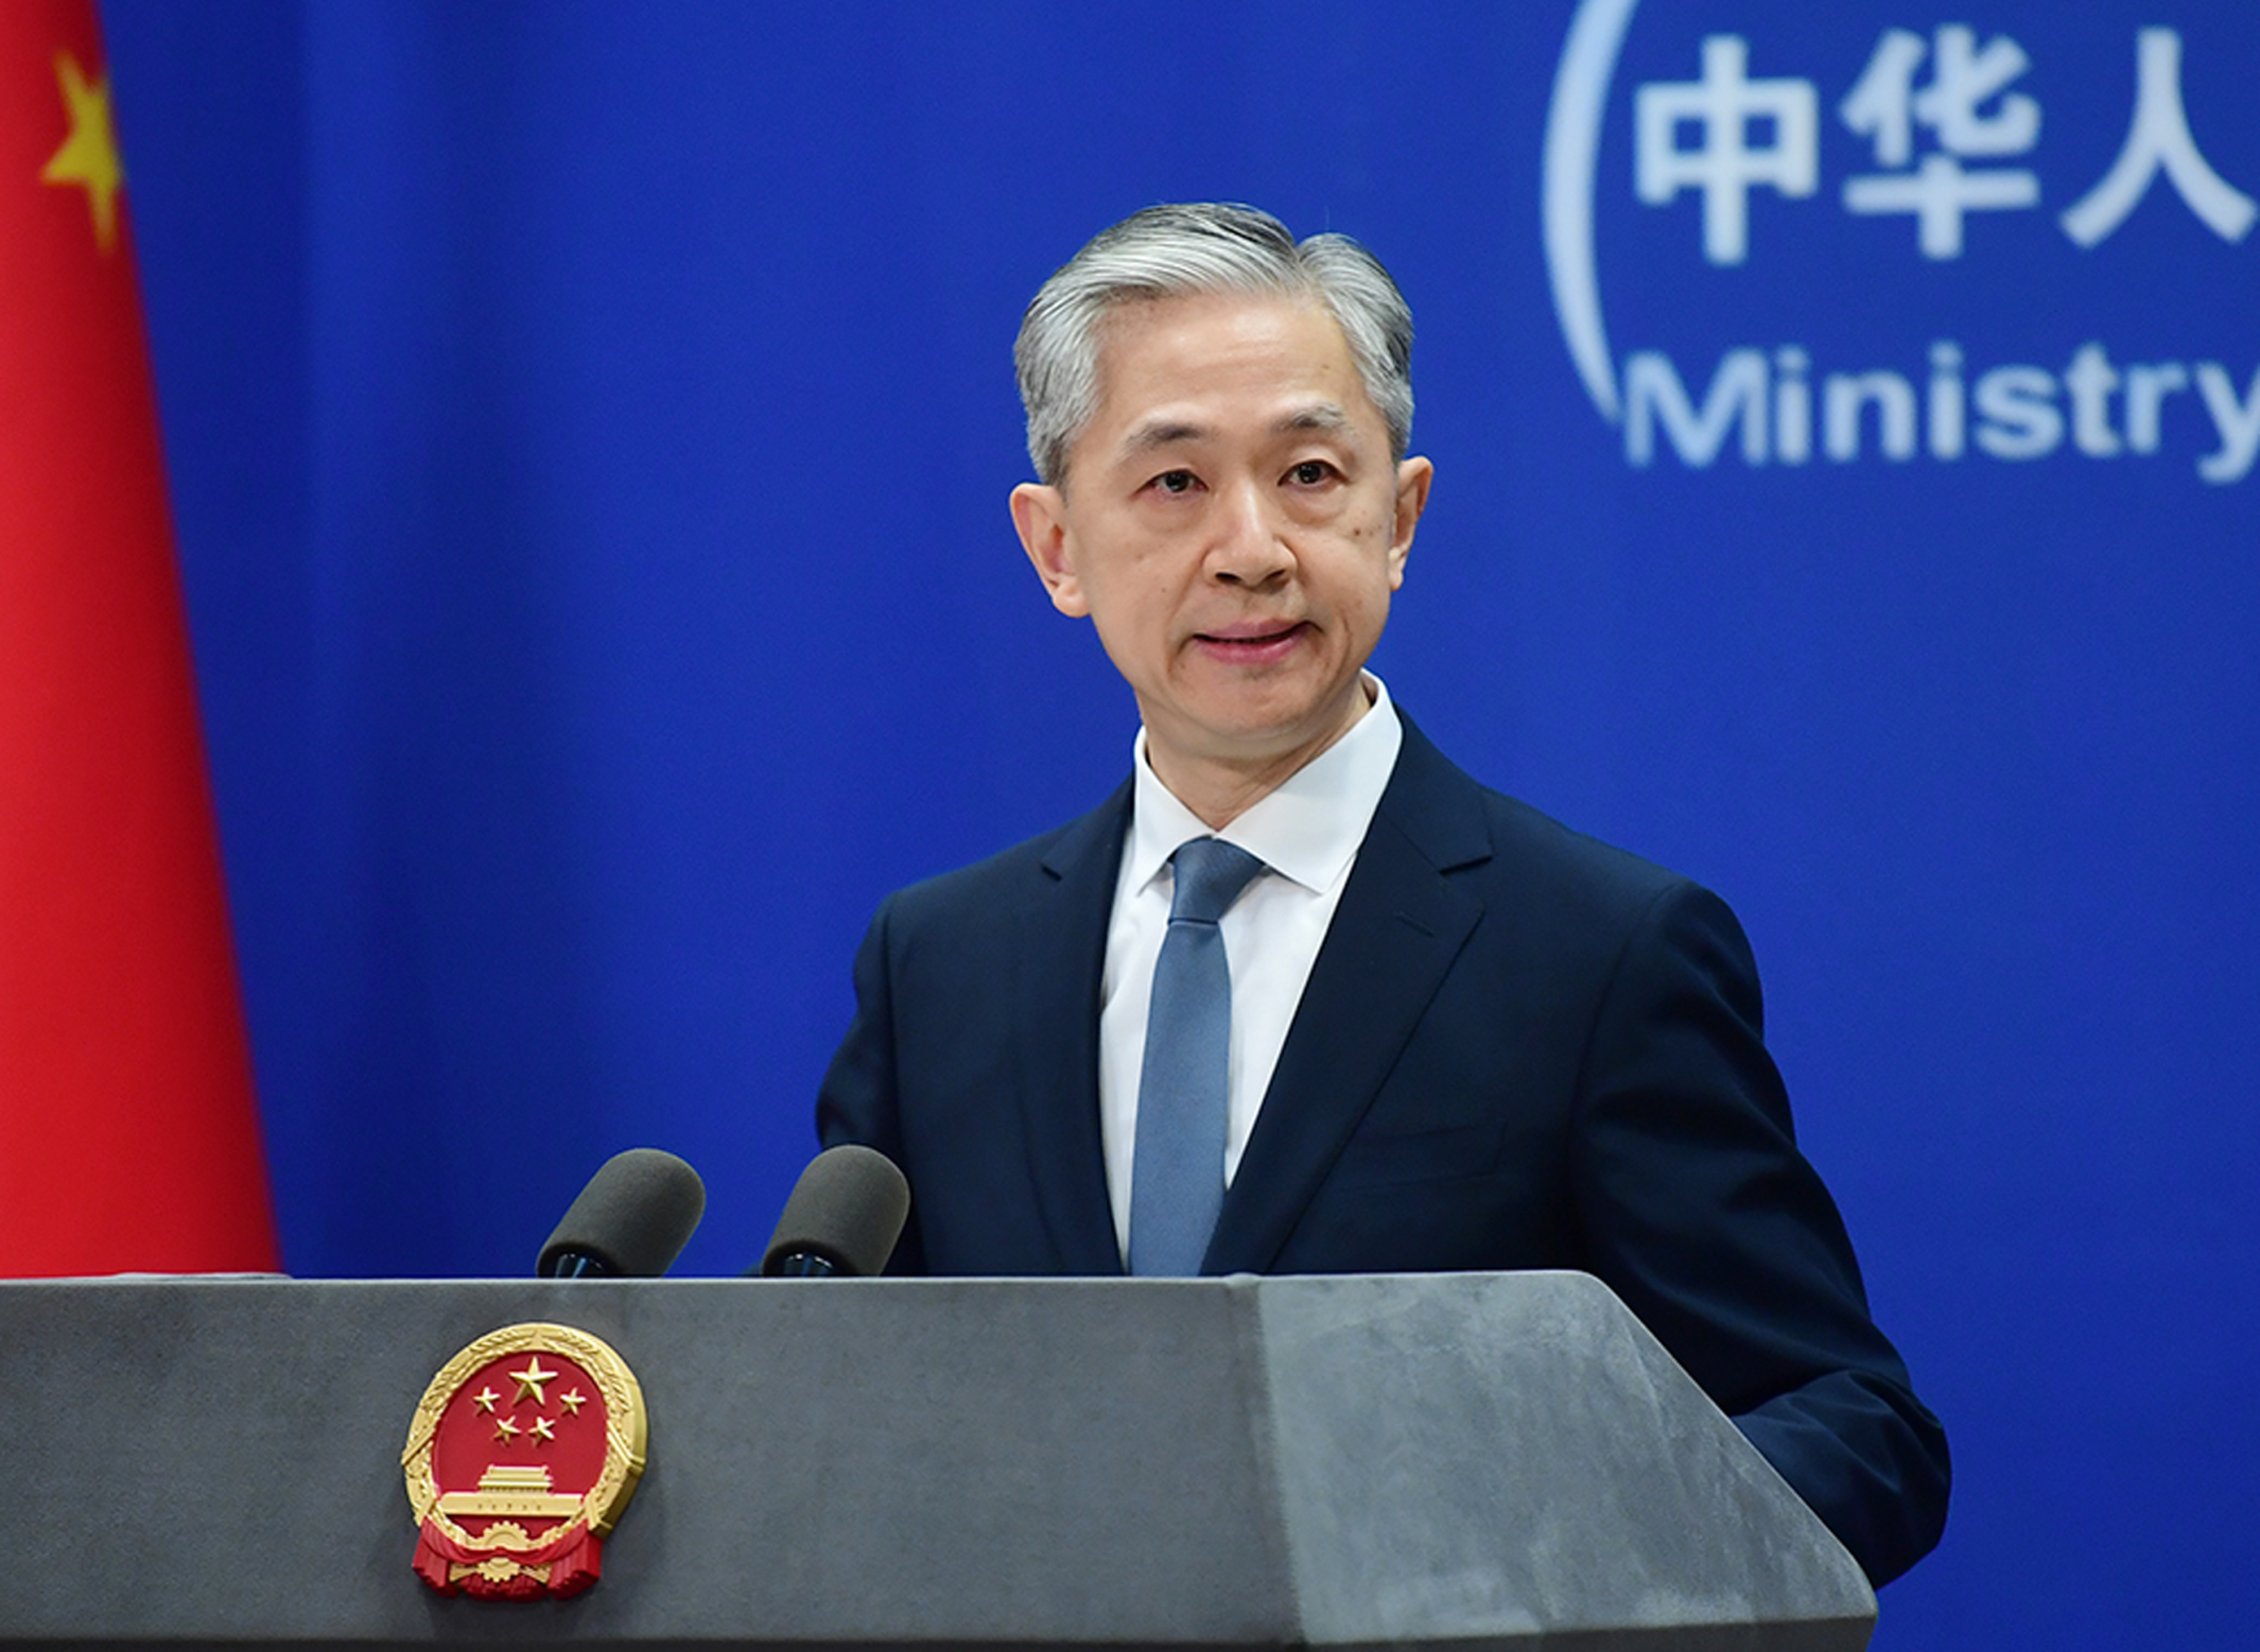 O porta-voz do Ministério das Relações Exteriores da China, Wang Wenbin, fala em uma coletiva de imprensa em Pequim, China, em 1º de março.